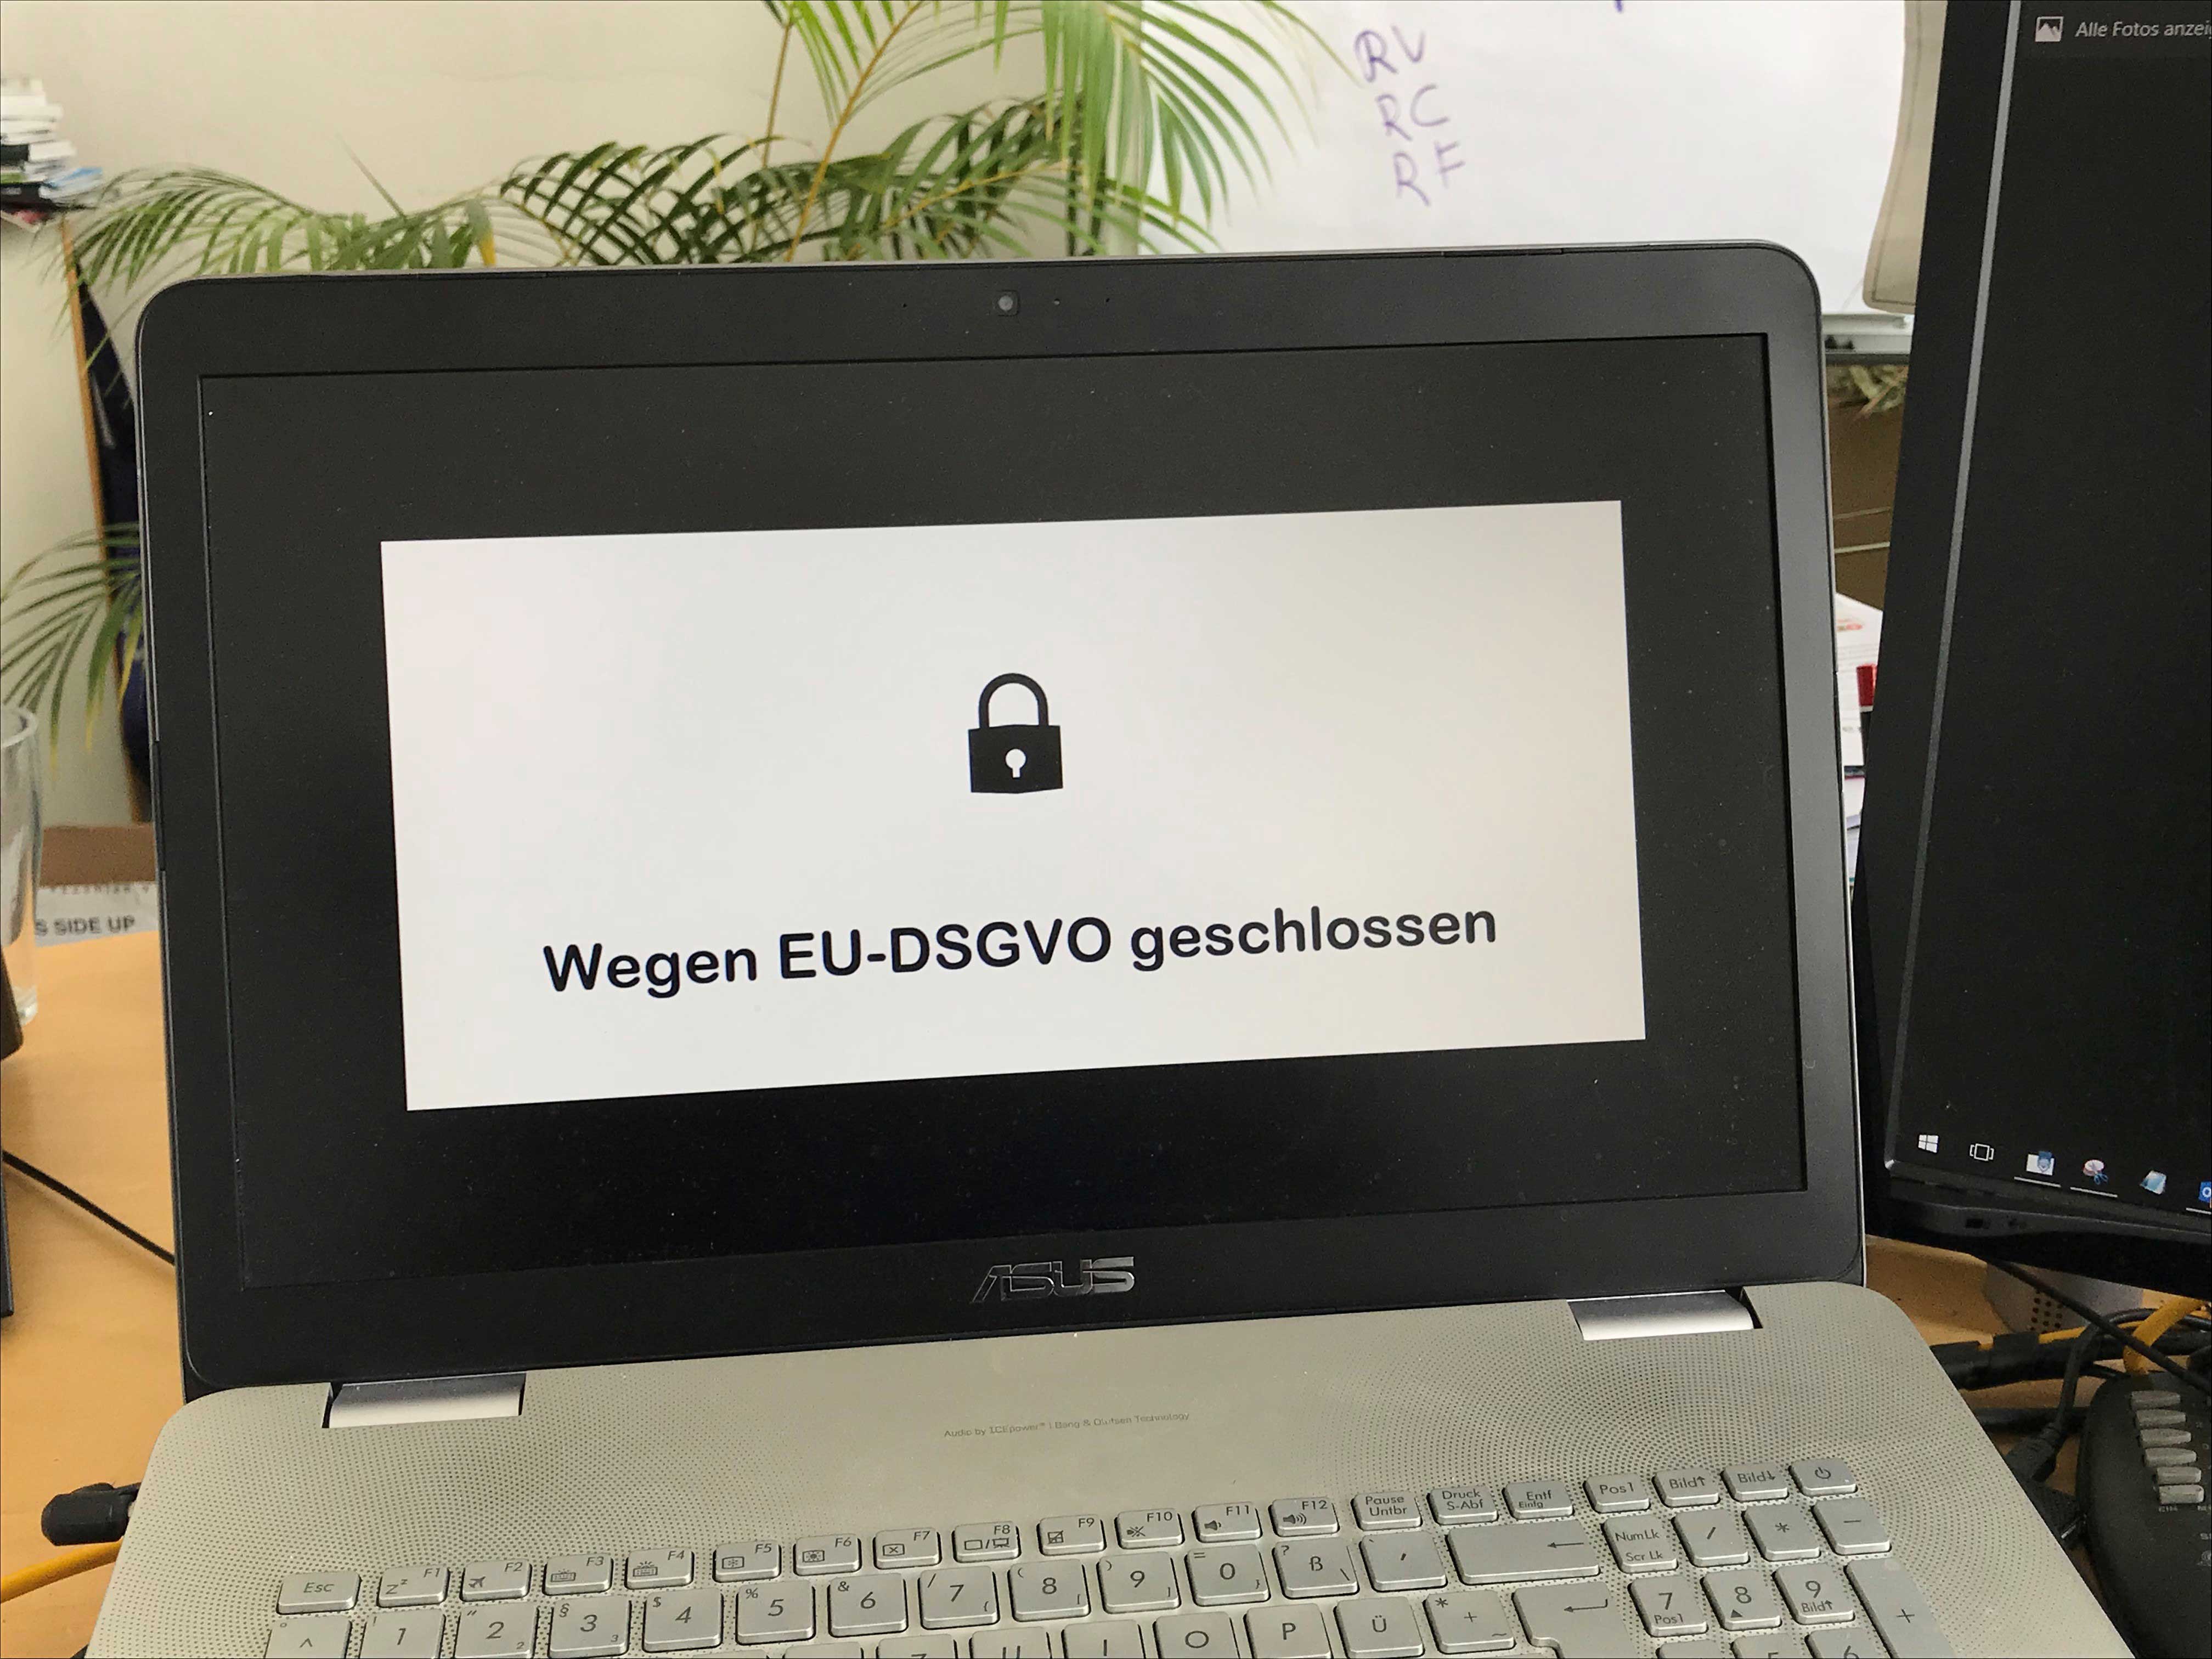 EU-DSGVO geschlossen EU-GDPR closed